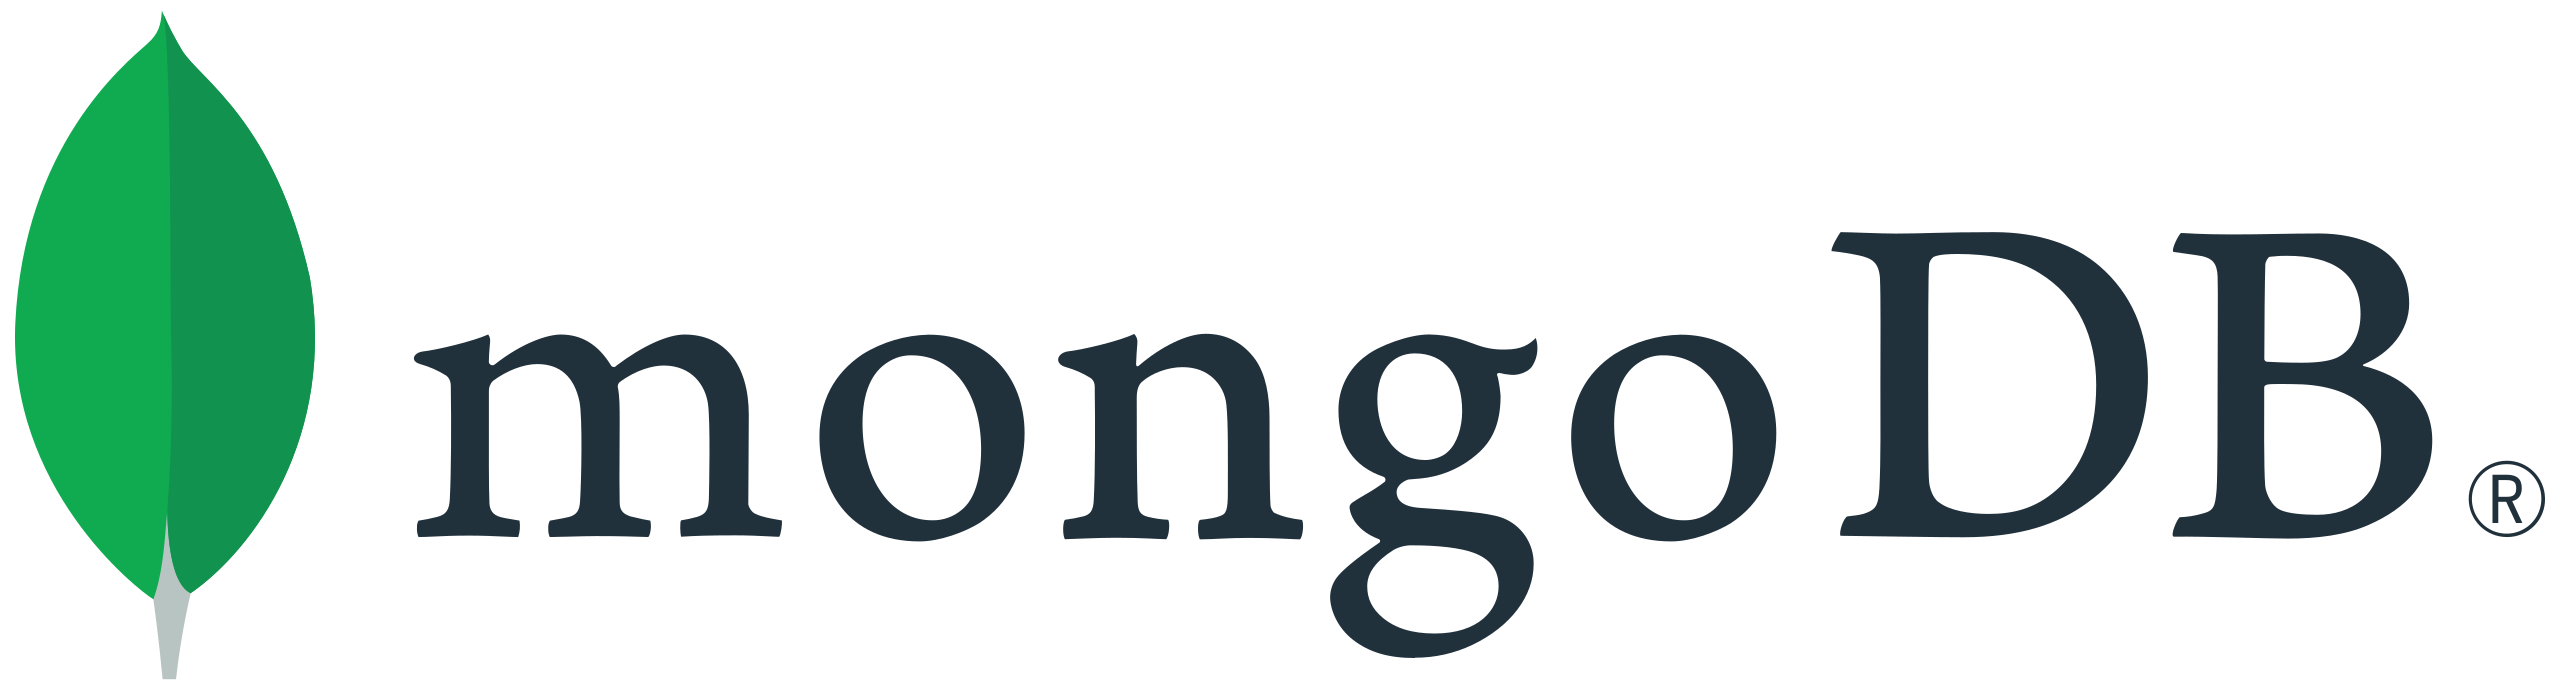 Mongodb Database Management Software.